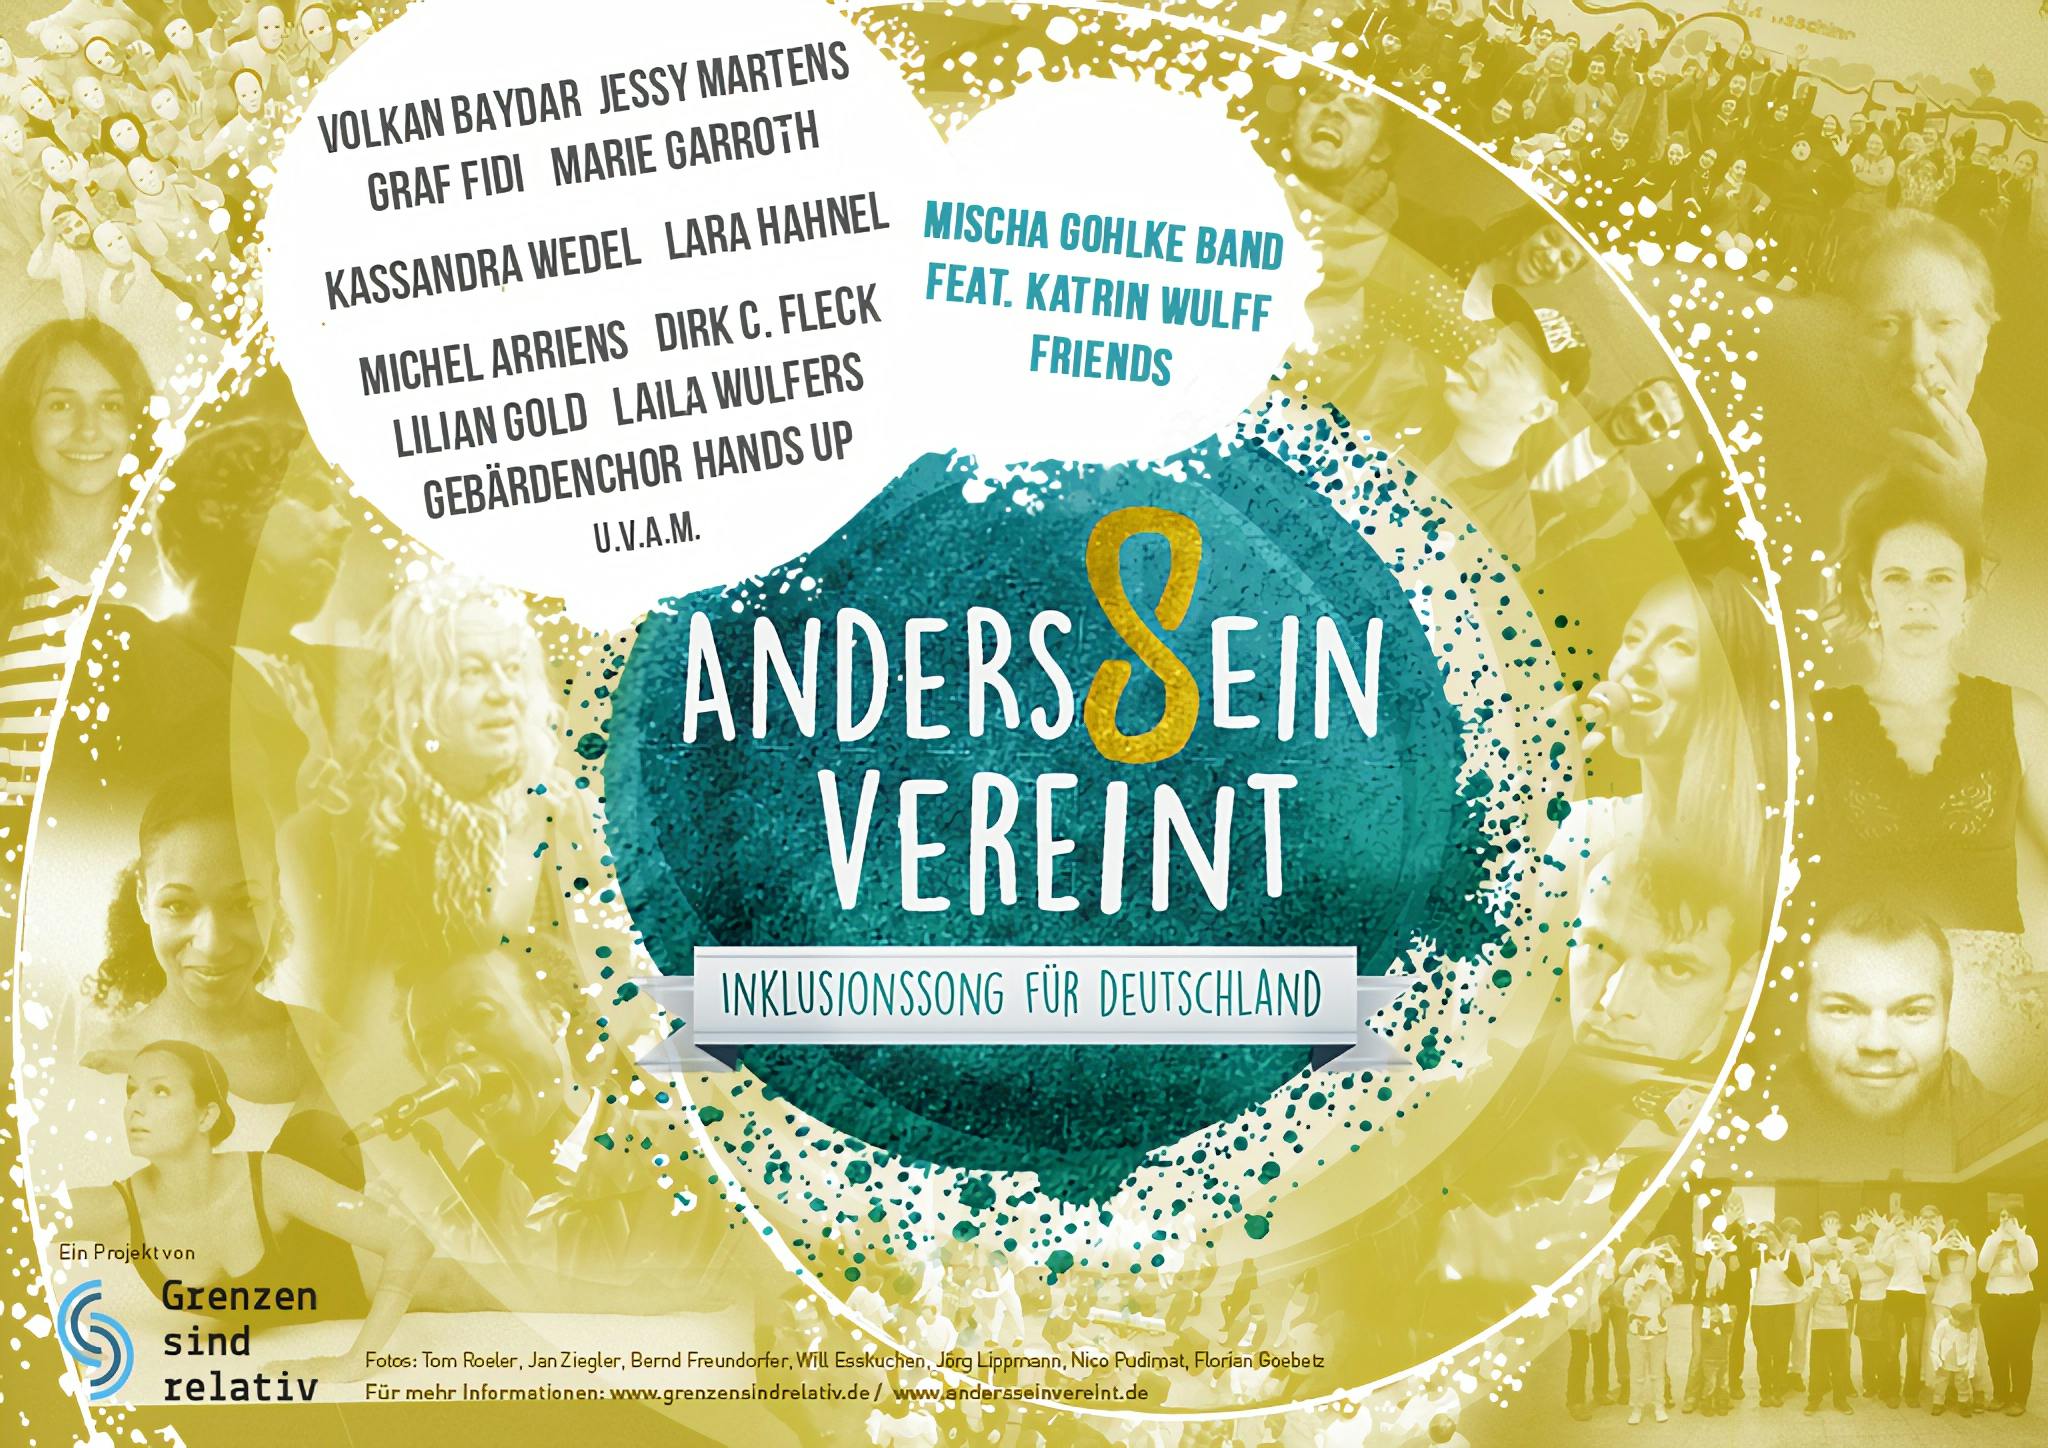 Kampagne "AndersSein vereint" 